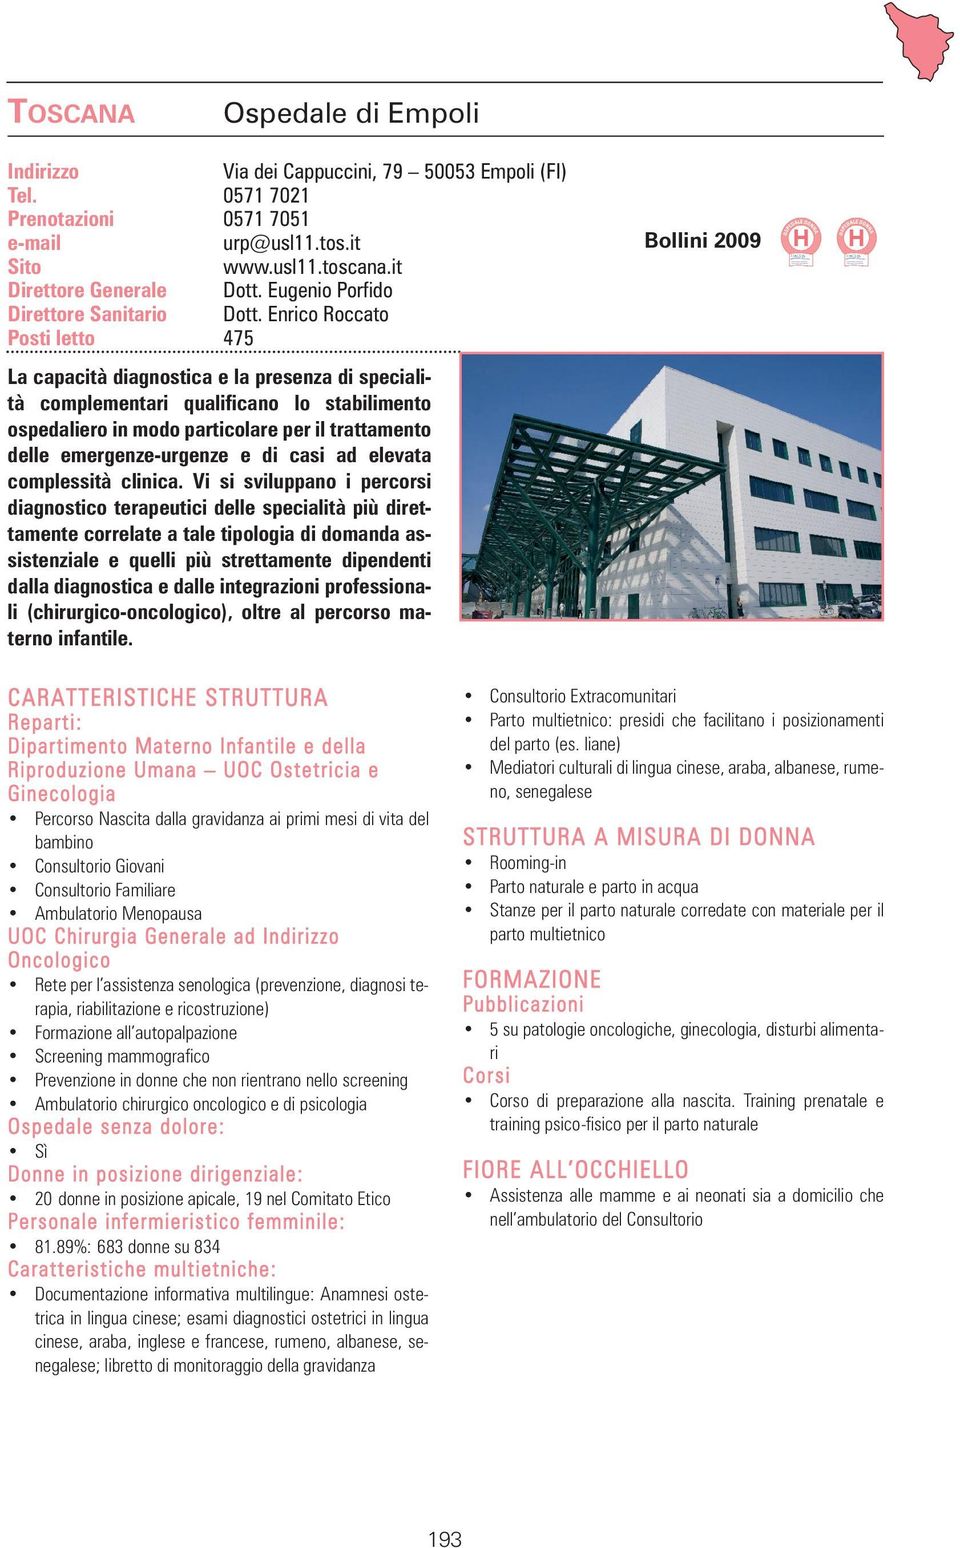 Enrico Roccato Posti letto 475 La capacità diagnostica e la presenza di specialità complementari qualificano lo stabilimento ospedaliero in modo particolare per il trattamento delle emergenze-urgenze